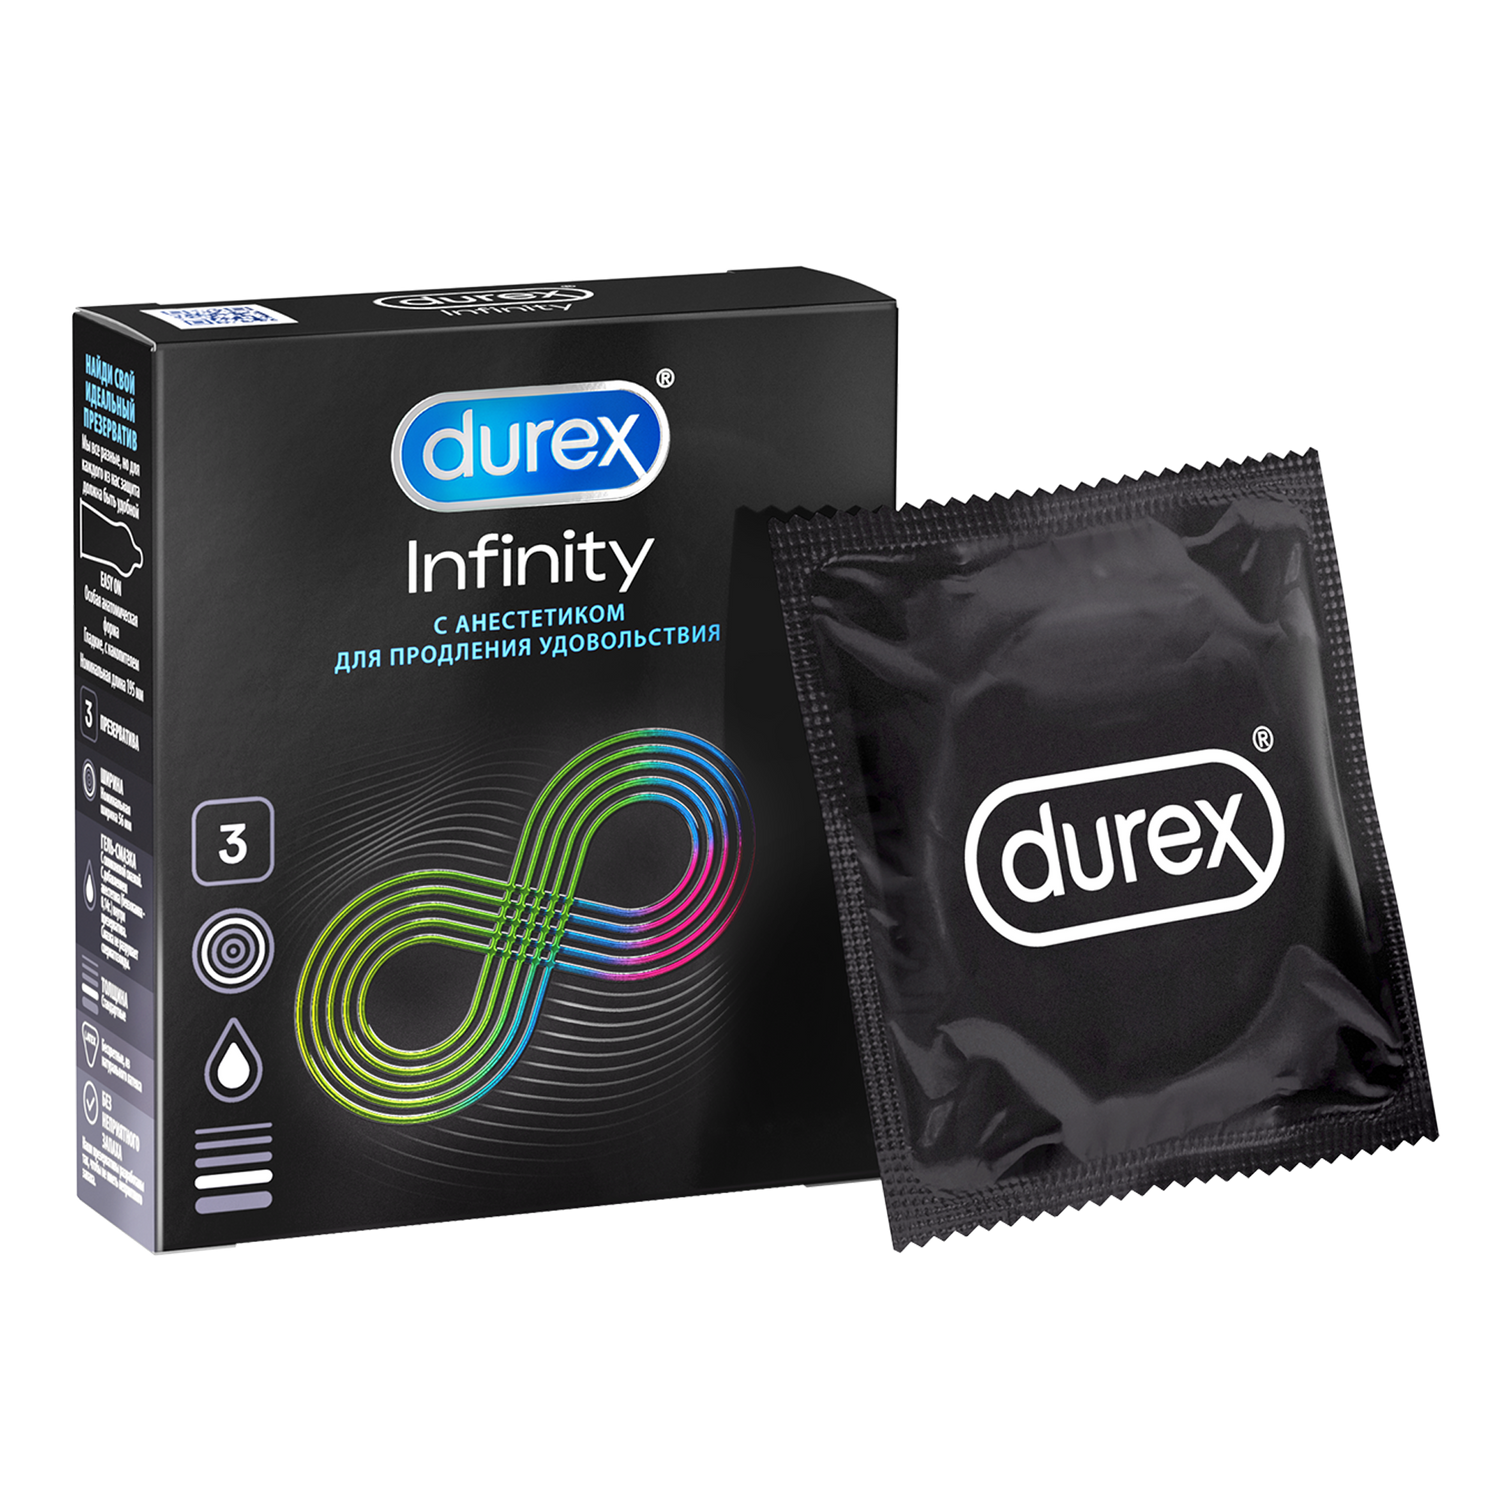 Презервативы Durex Infinity с анестетиком гладкие, 3 шт. дюрекс презервативы инфинити с анестетиком 3